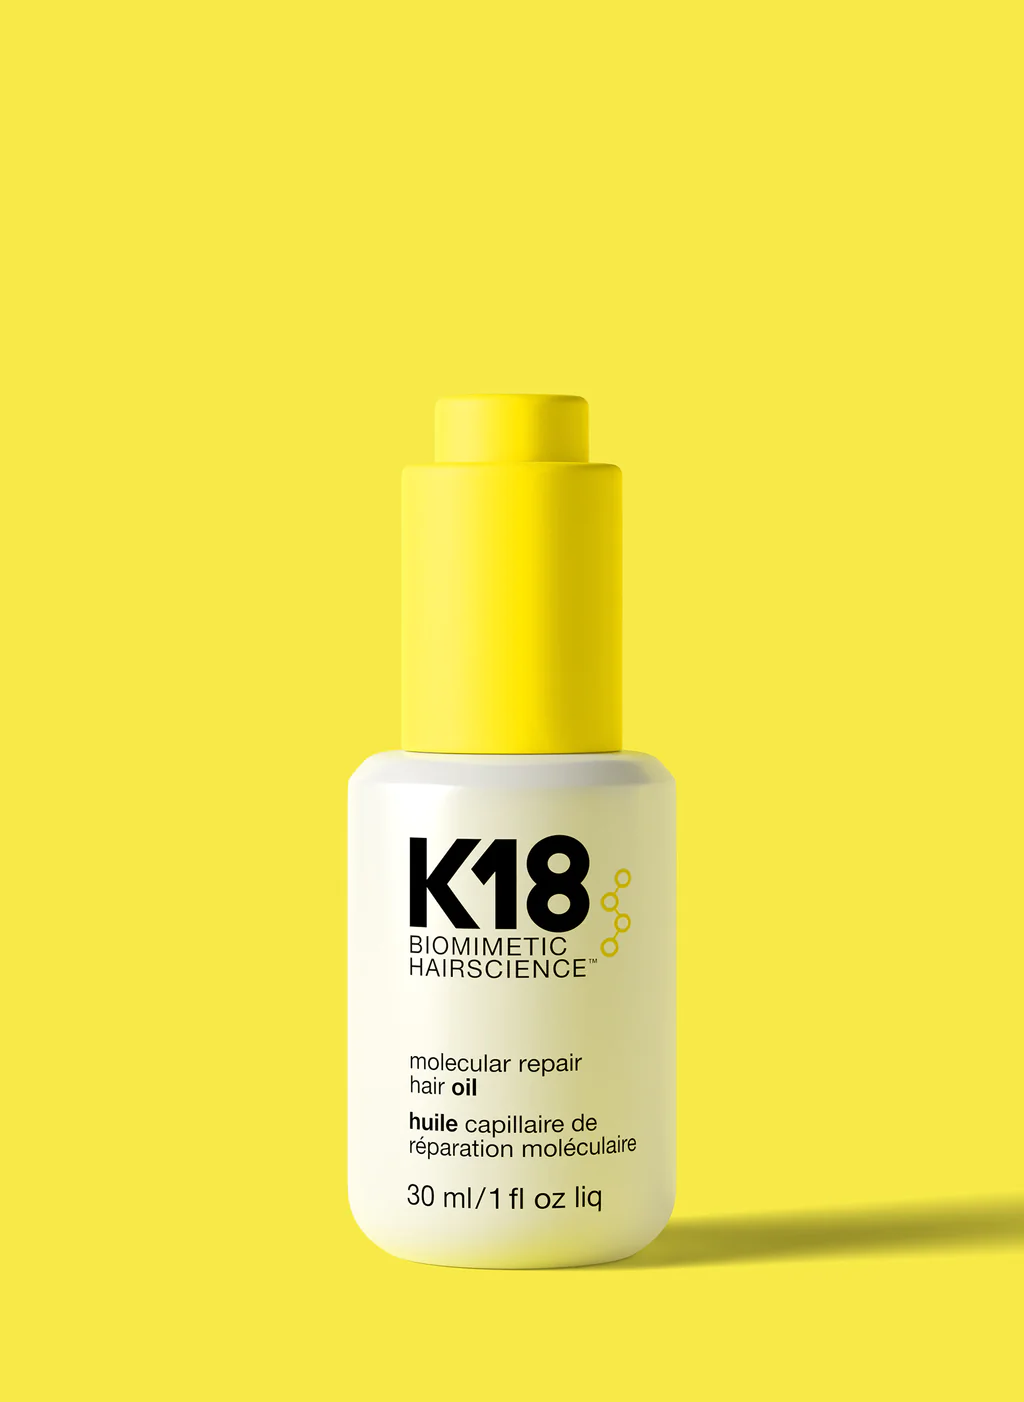 Масло-бустер для молекулярного восстановления волос — Molecular repair hair oil 